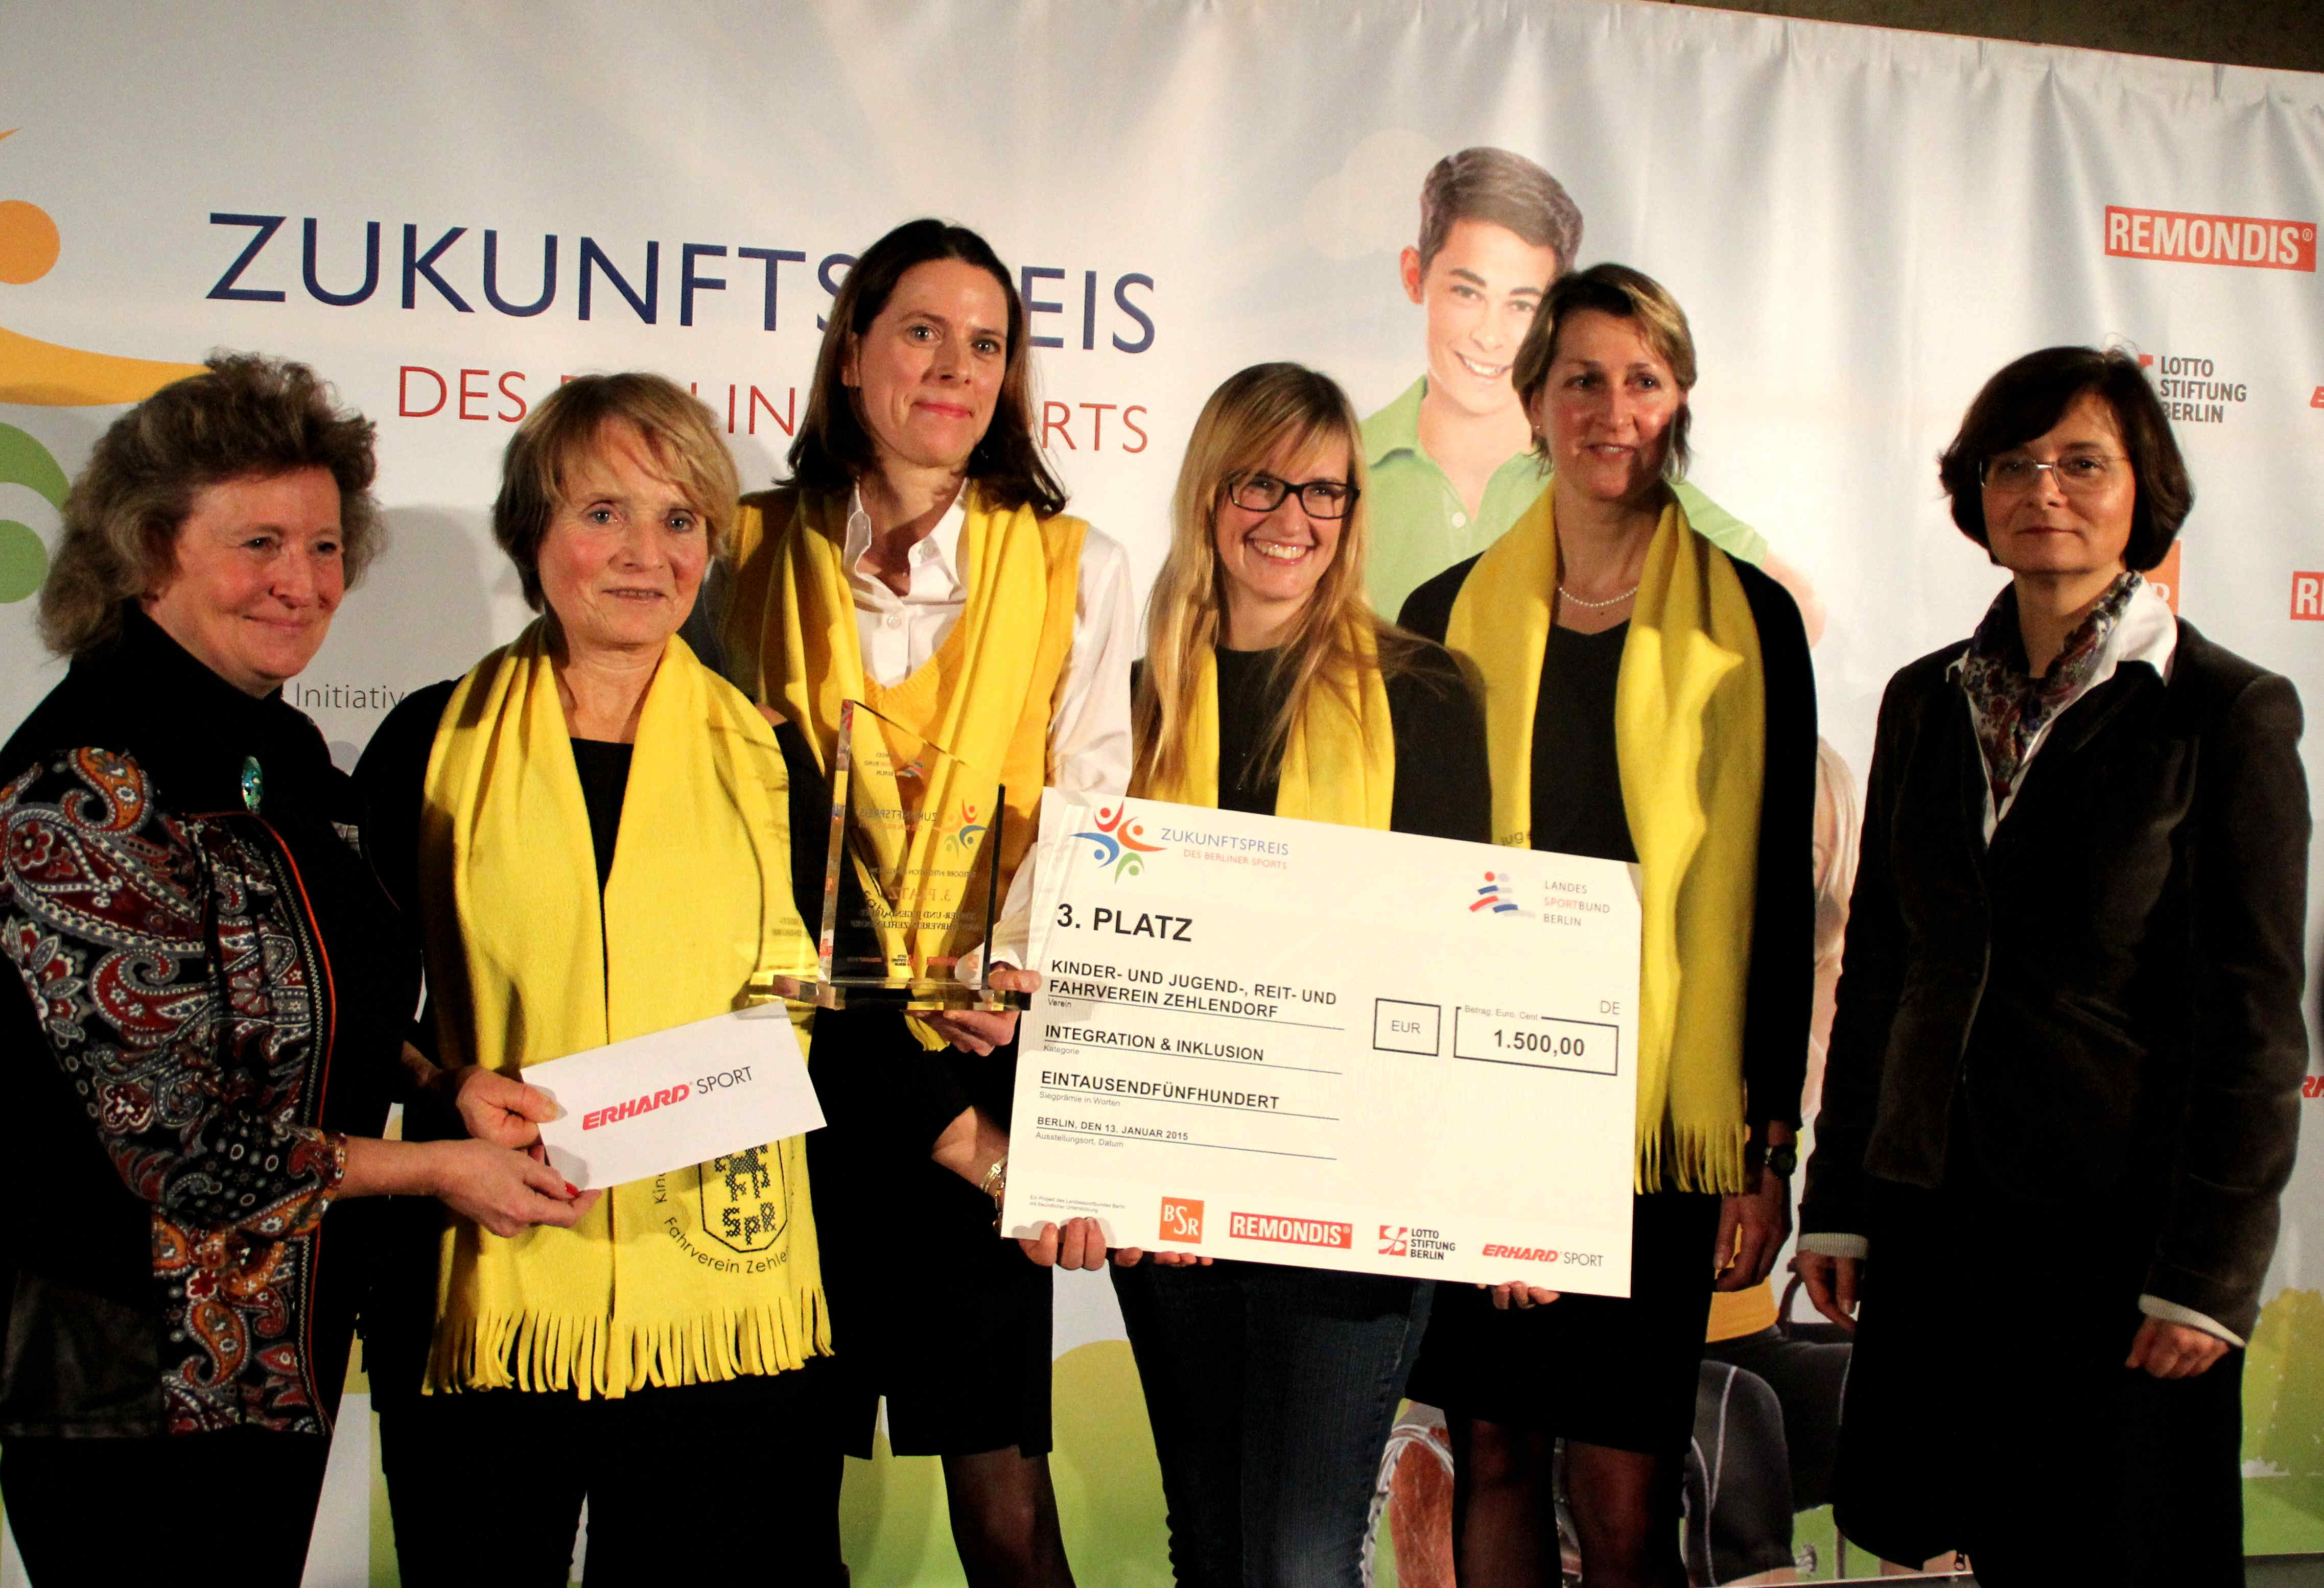 „WegberREITER“ für die Inklusion: KJRV mit Zukunftspreis des Berliner Sports ausgezeichnet